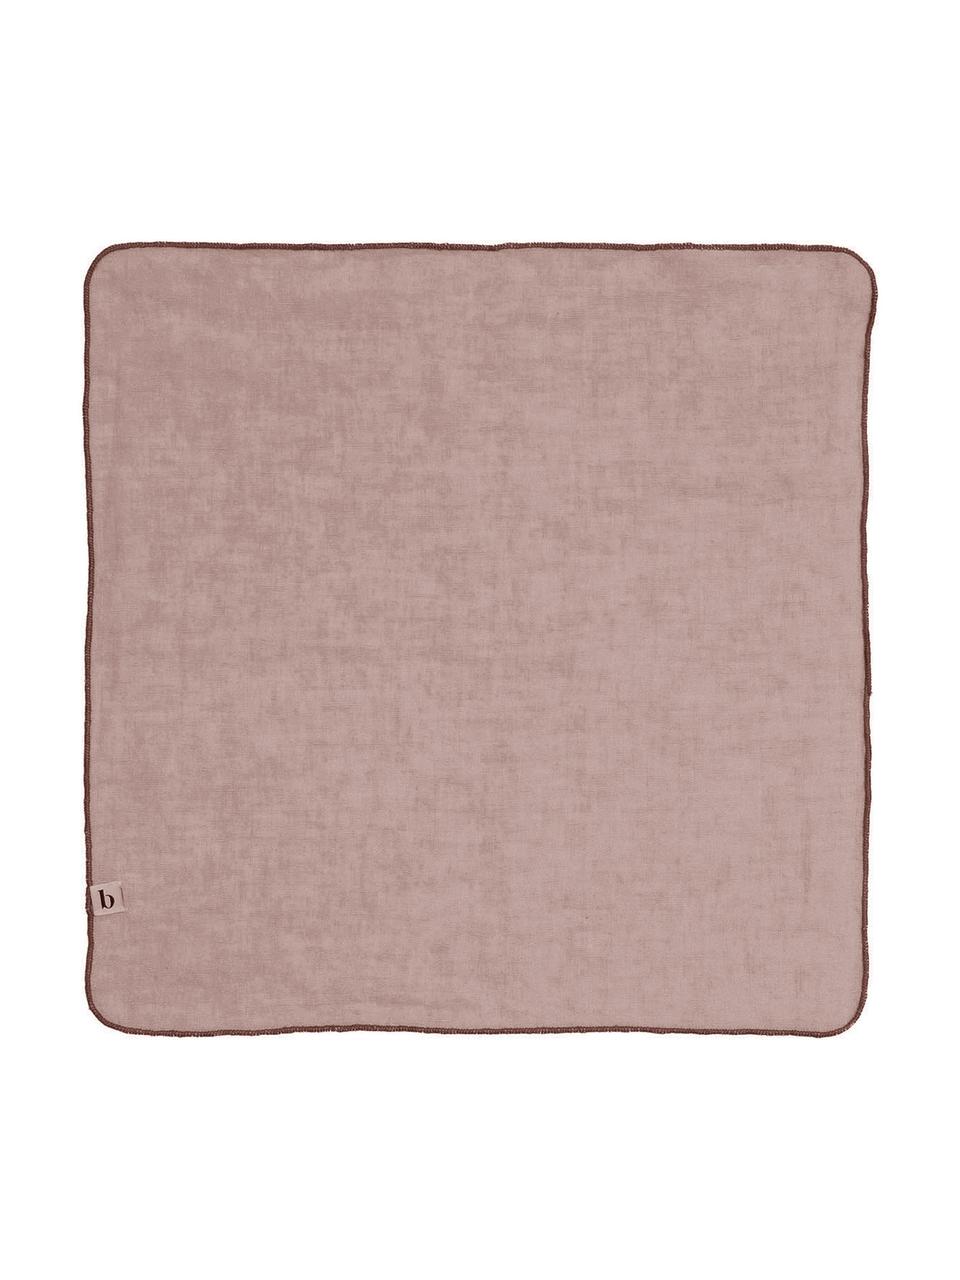 Linnen servetten Gracie in roze, 2 stuks, 100% linnen, Roze, B 45 x L 45 cm